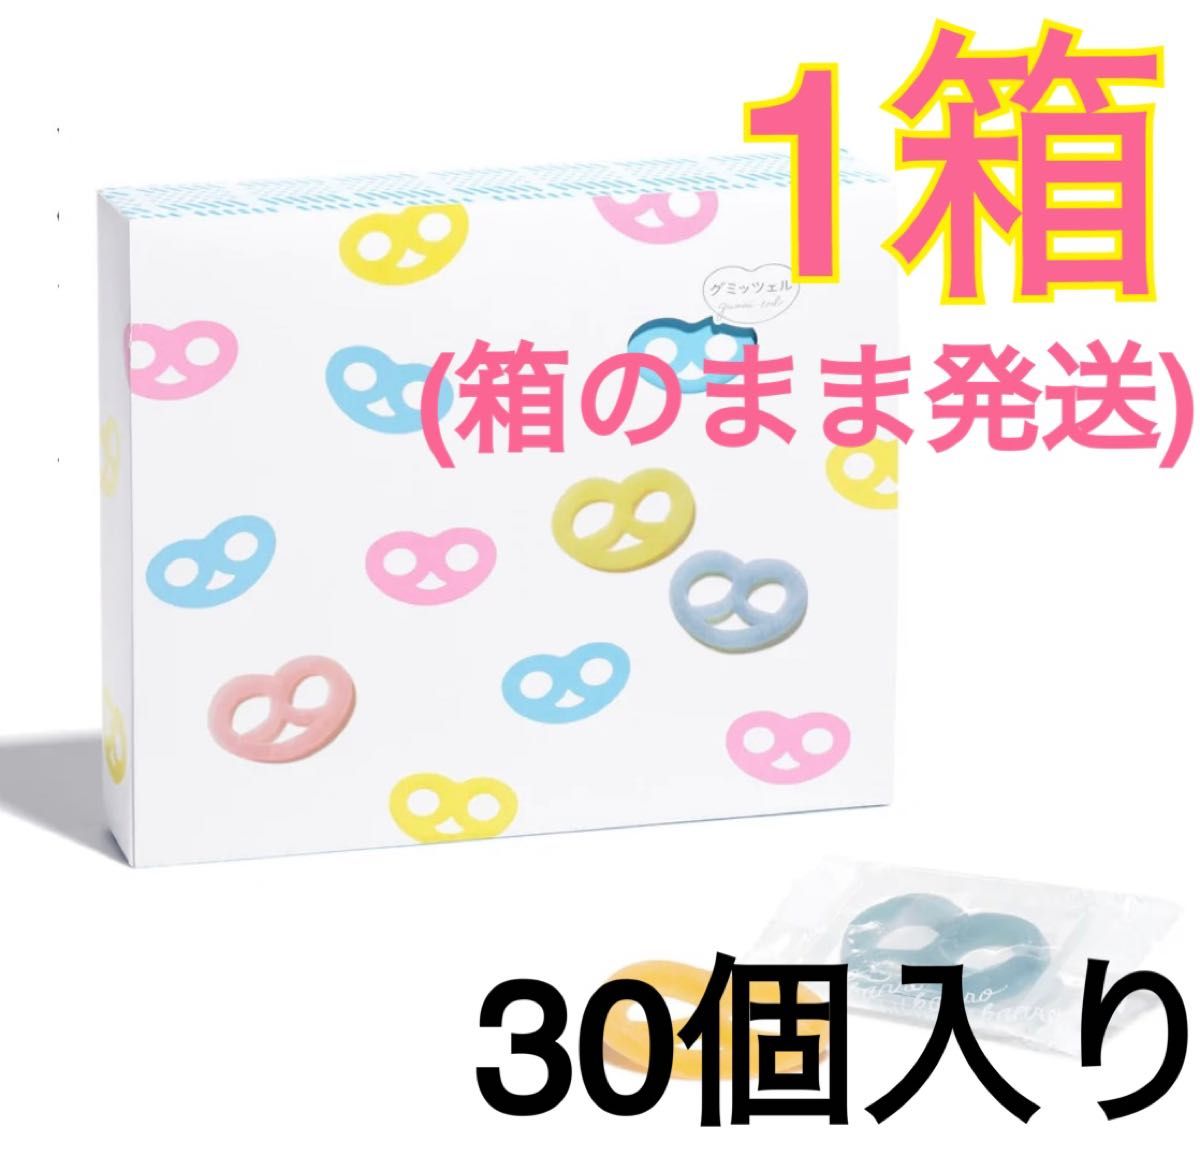 12箱 グミッツェルBOX 30個入り 未開封 グミキャンディー-